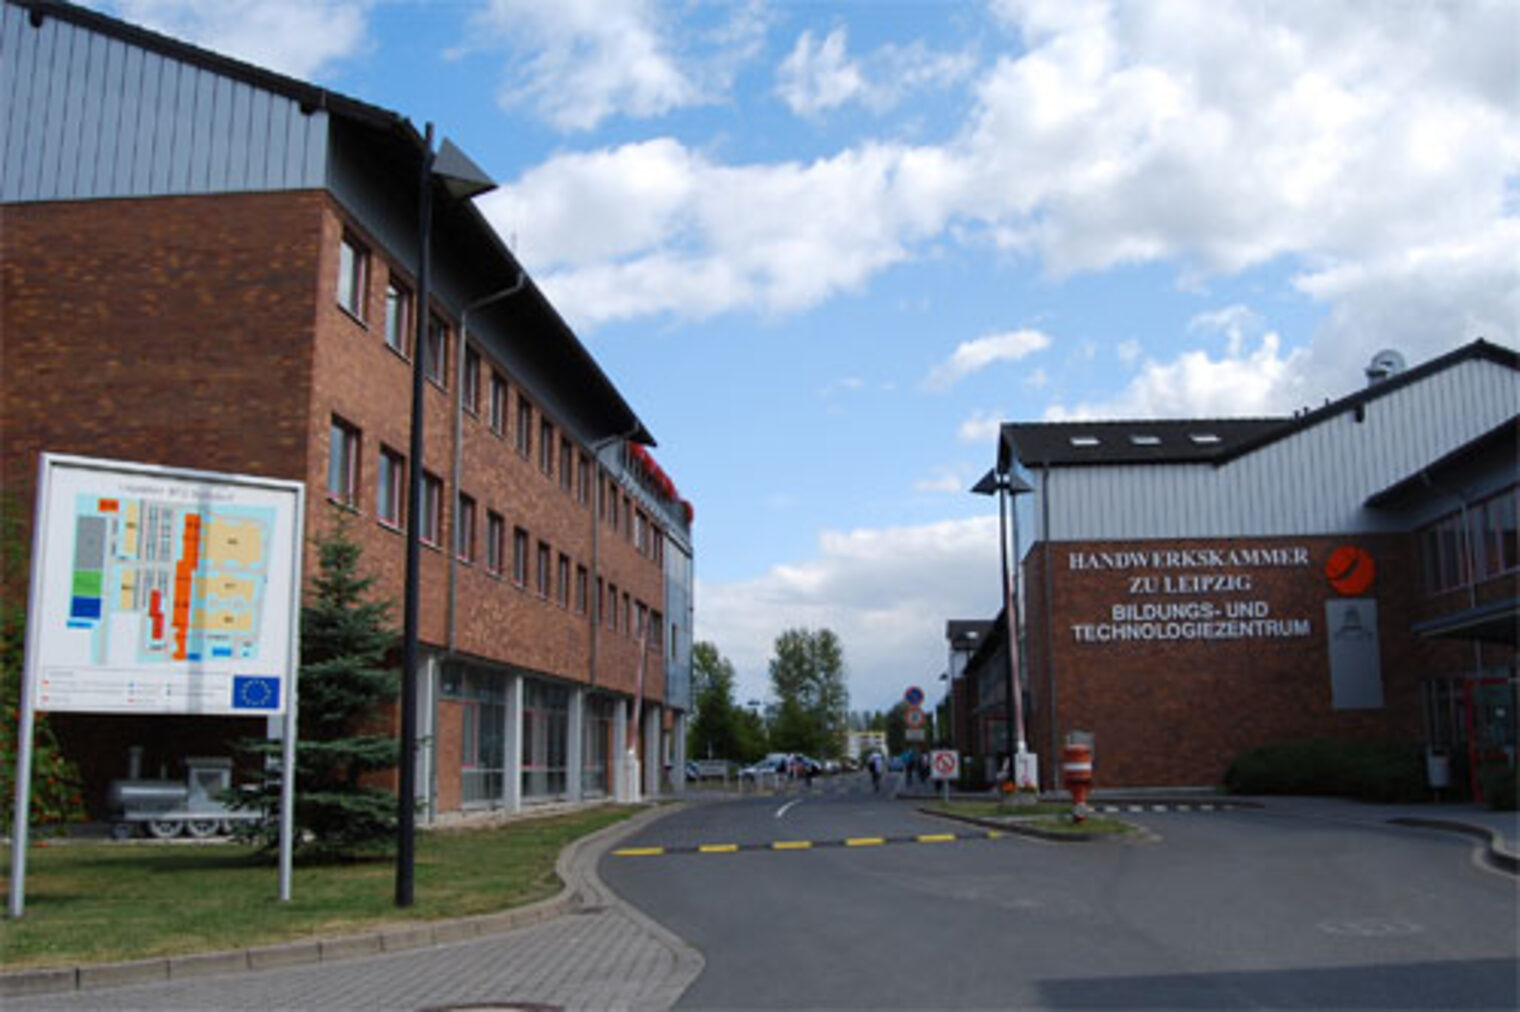 Bildungs- und Technologiezentrum der Handwerkskammer zu Leipzig